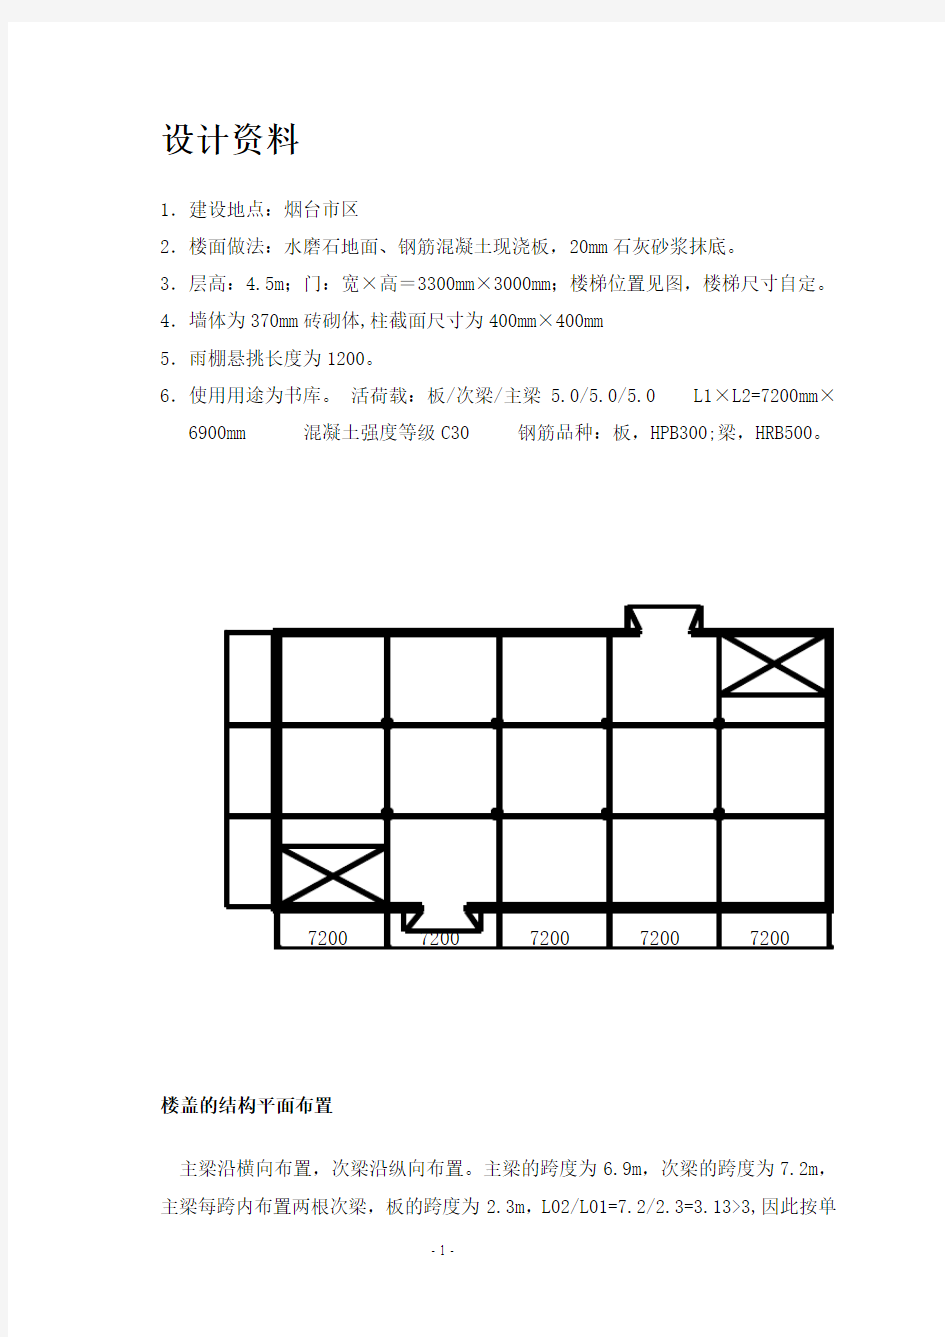 建筑结构设计计算书(书库设计)